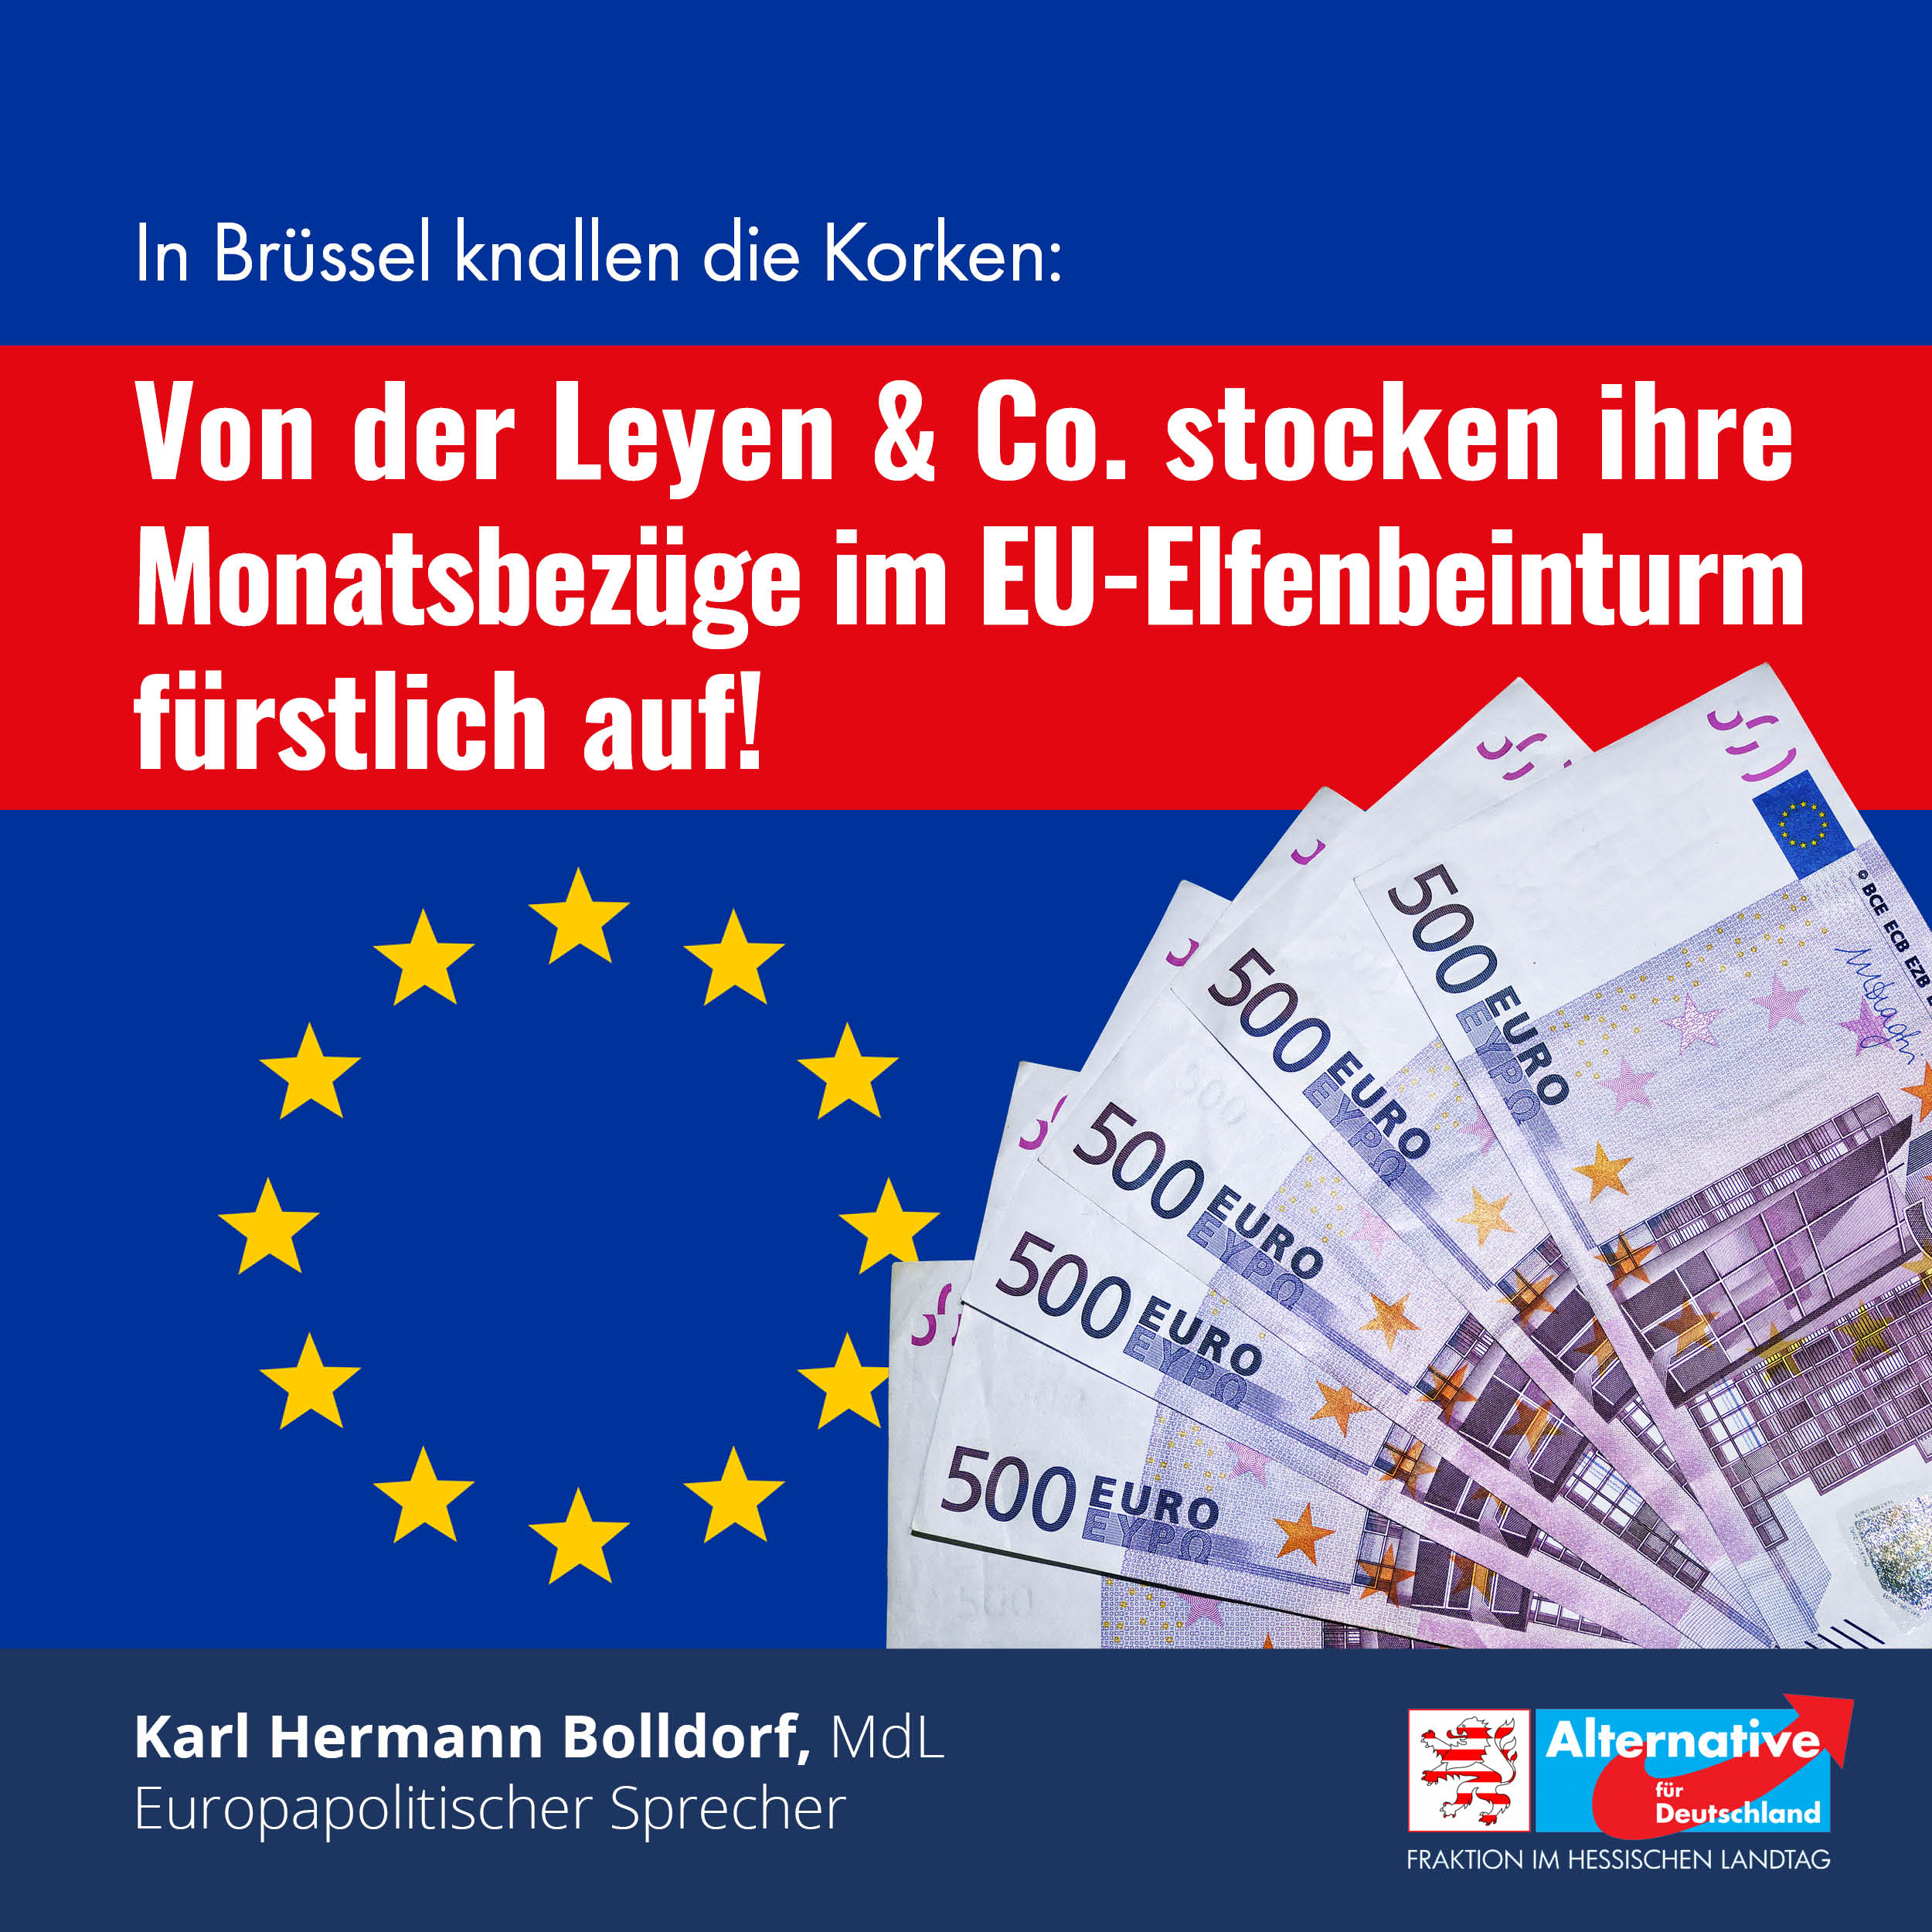 You are currently viewing In Brüssel knallen die Korken: Von der Leyen & Co. stocken ihre Monatsbezüge im EU-Elfenbeinturm fürstlich auf